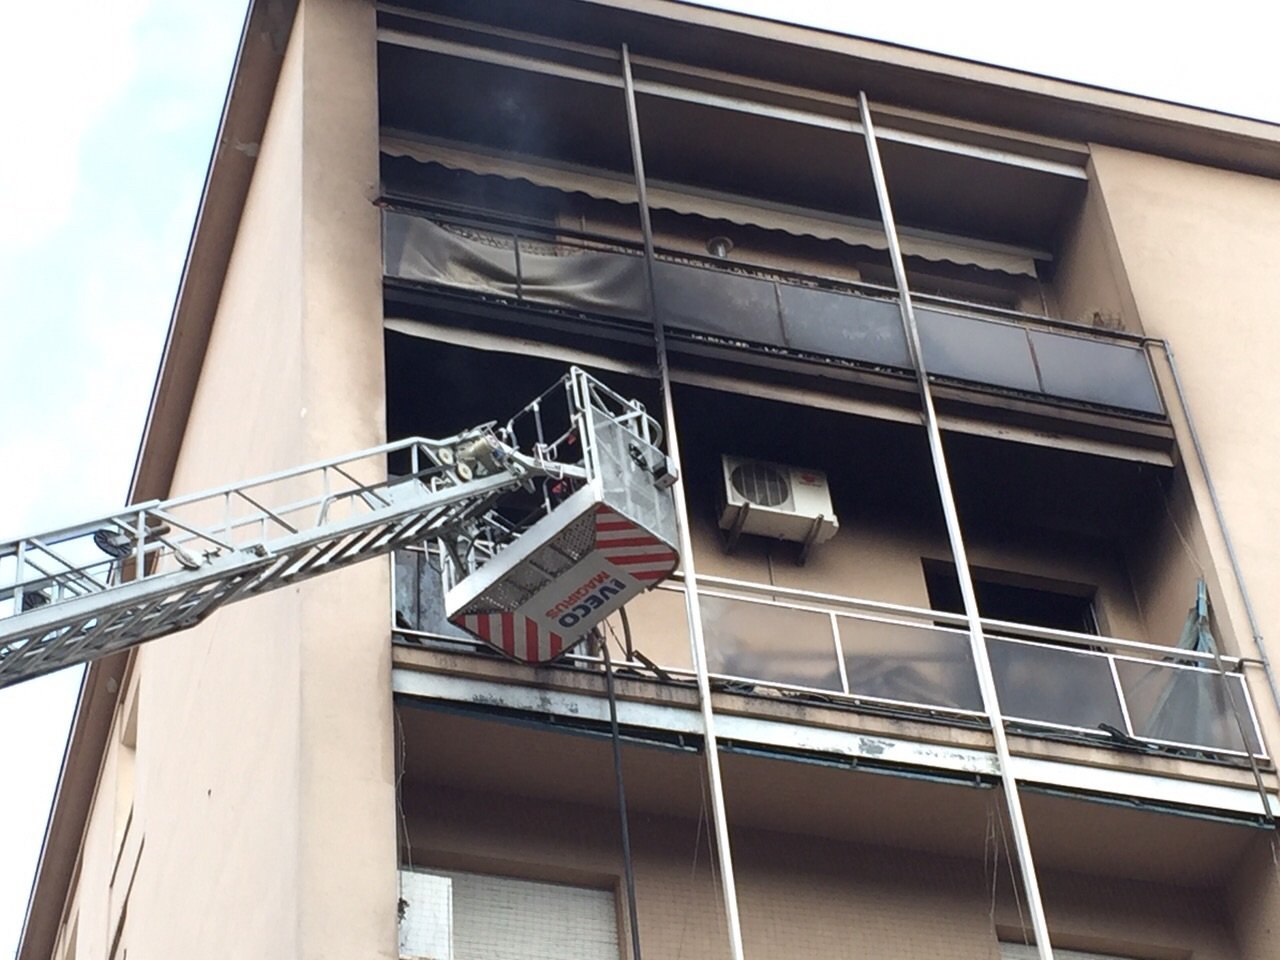 Incendio in un alloggio a Valenza. Perde la vita una donna di 89 anni. Tratta in salvo la figlia 60enne [FOTO]